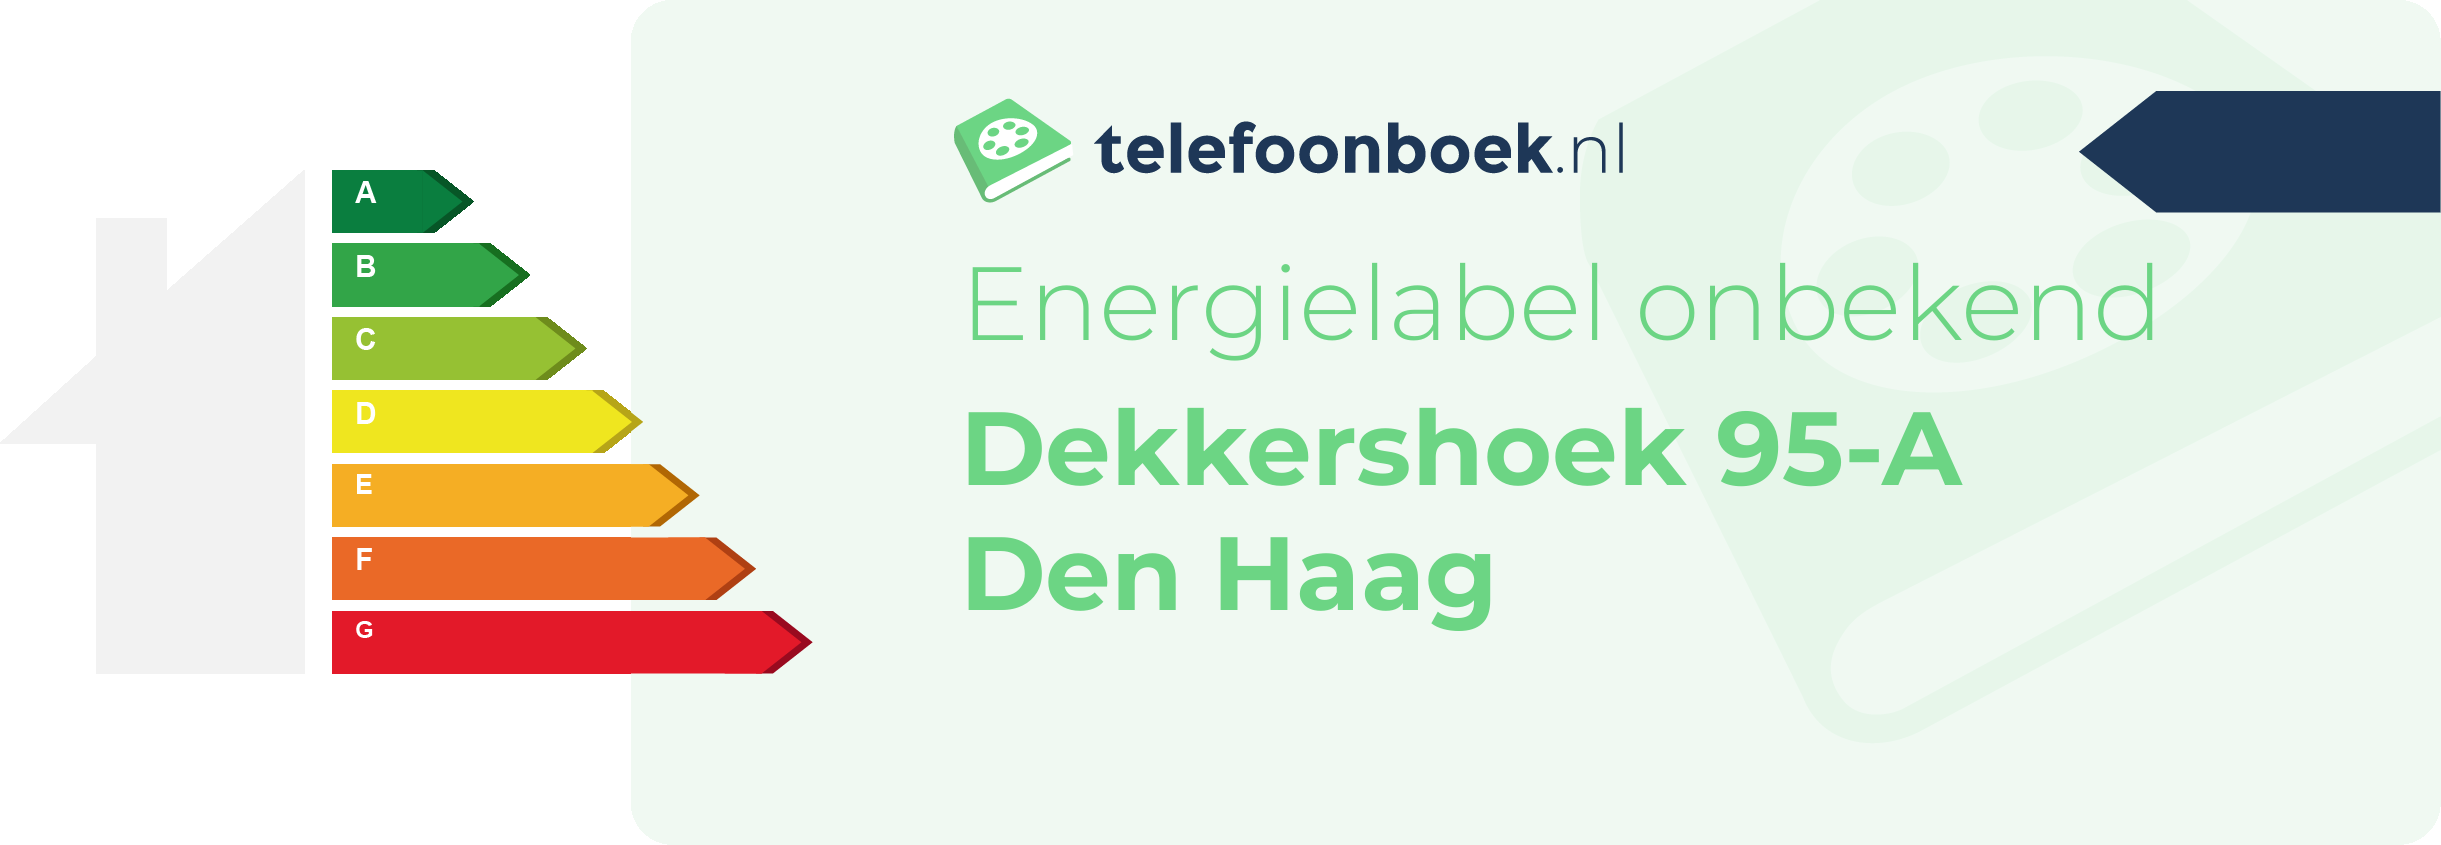 Energielabel Dekkershoek 95-A Den Haag